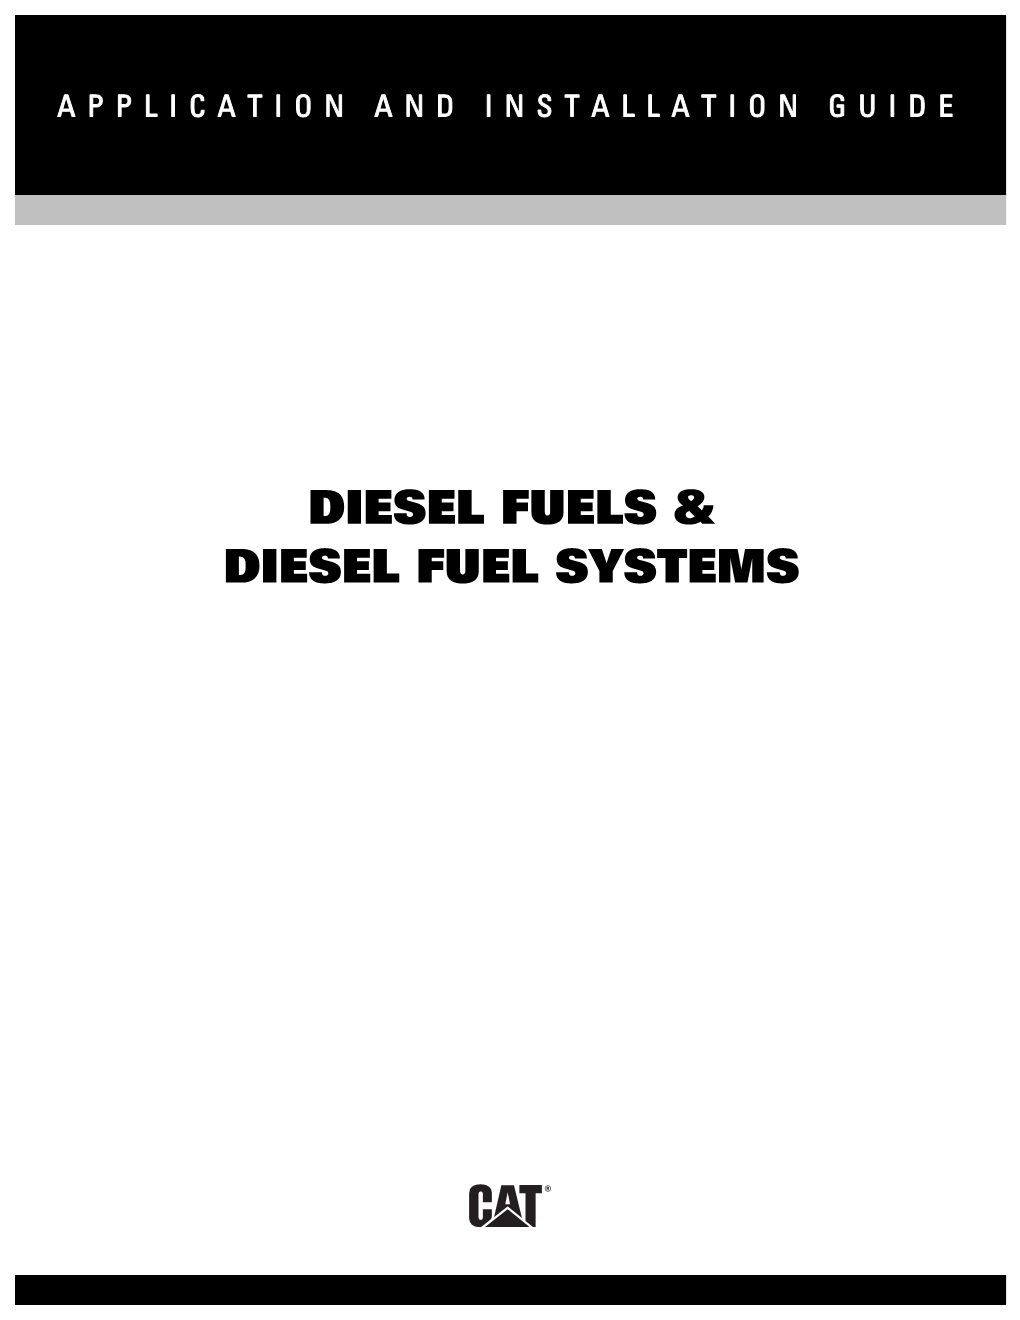 Diesel Fuels & Diesel Fuel Systems